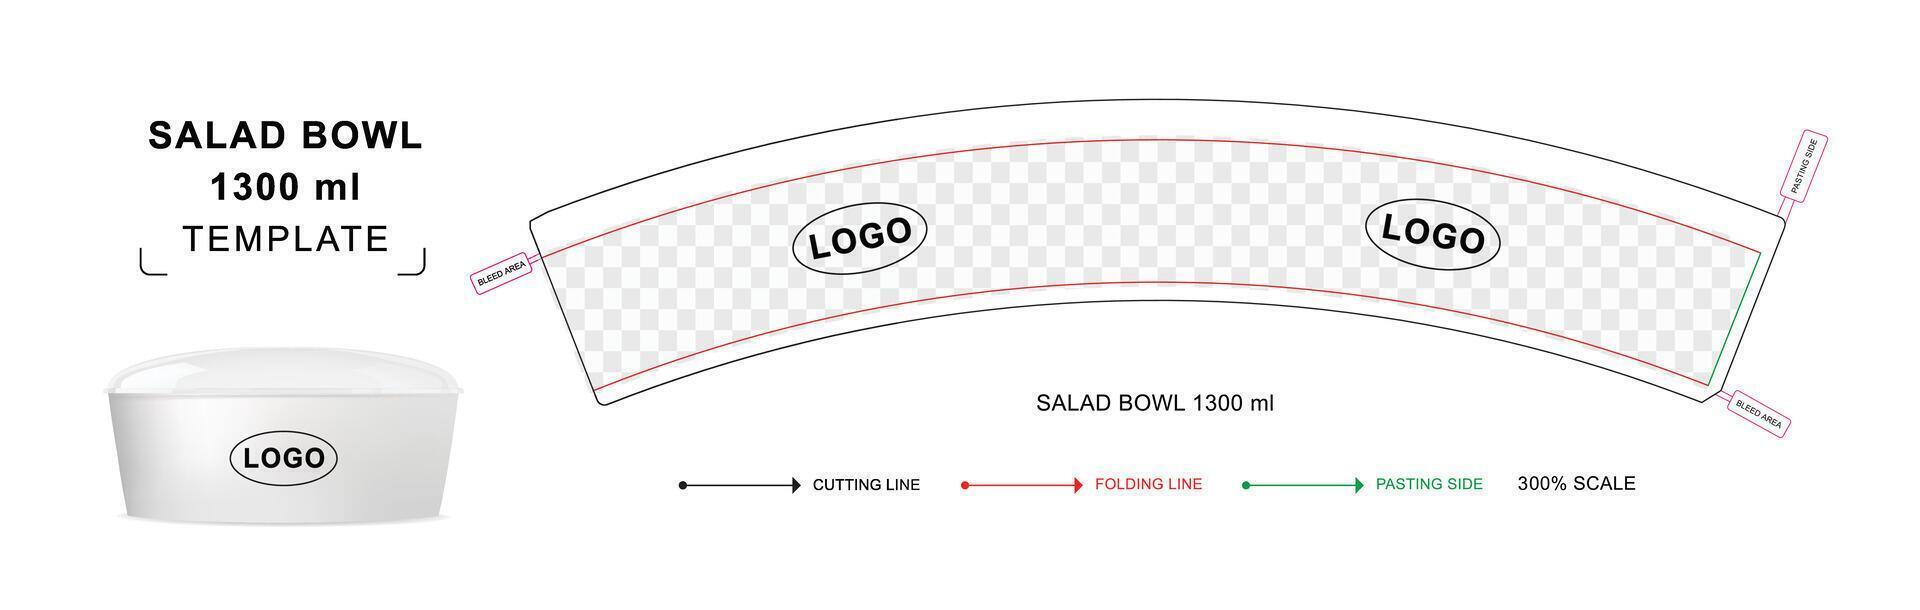 salada tigela morrer cortar modelo para 1300 ml, salada tigela linha-chave vetor